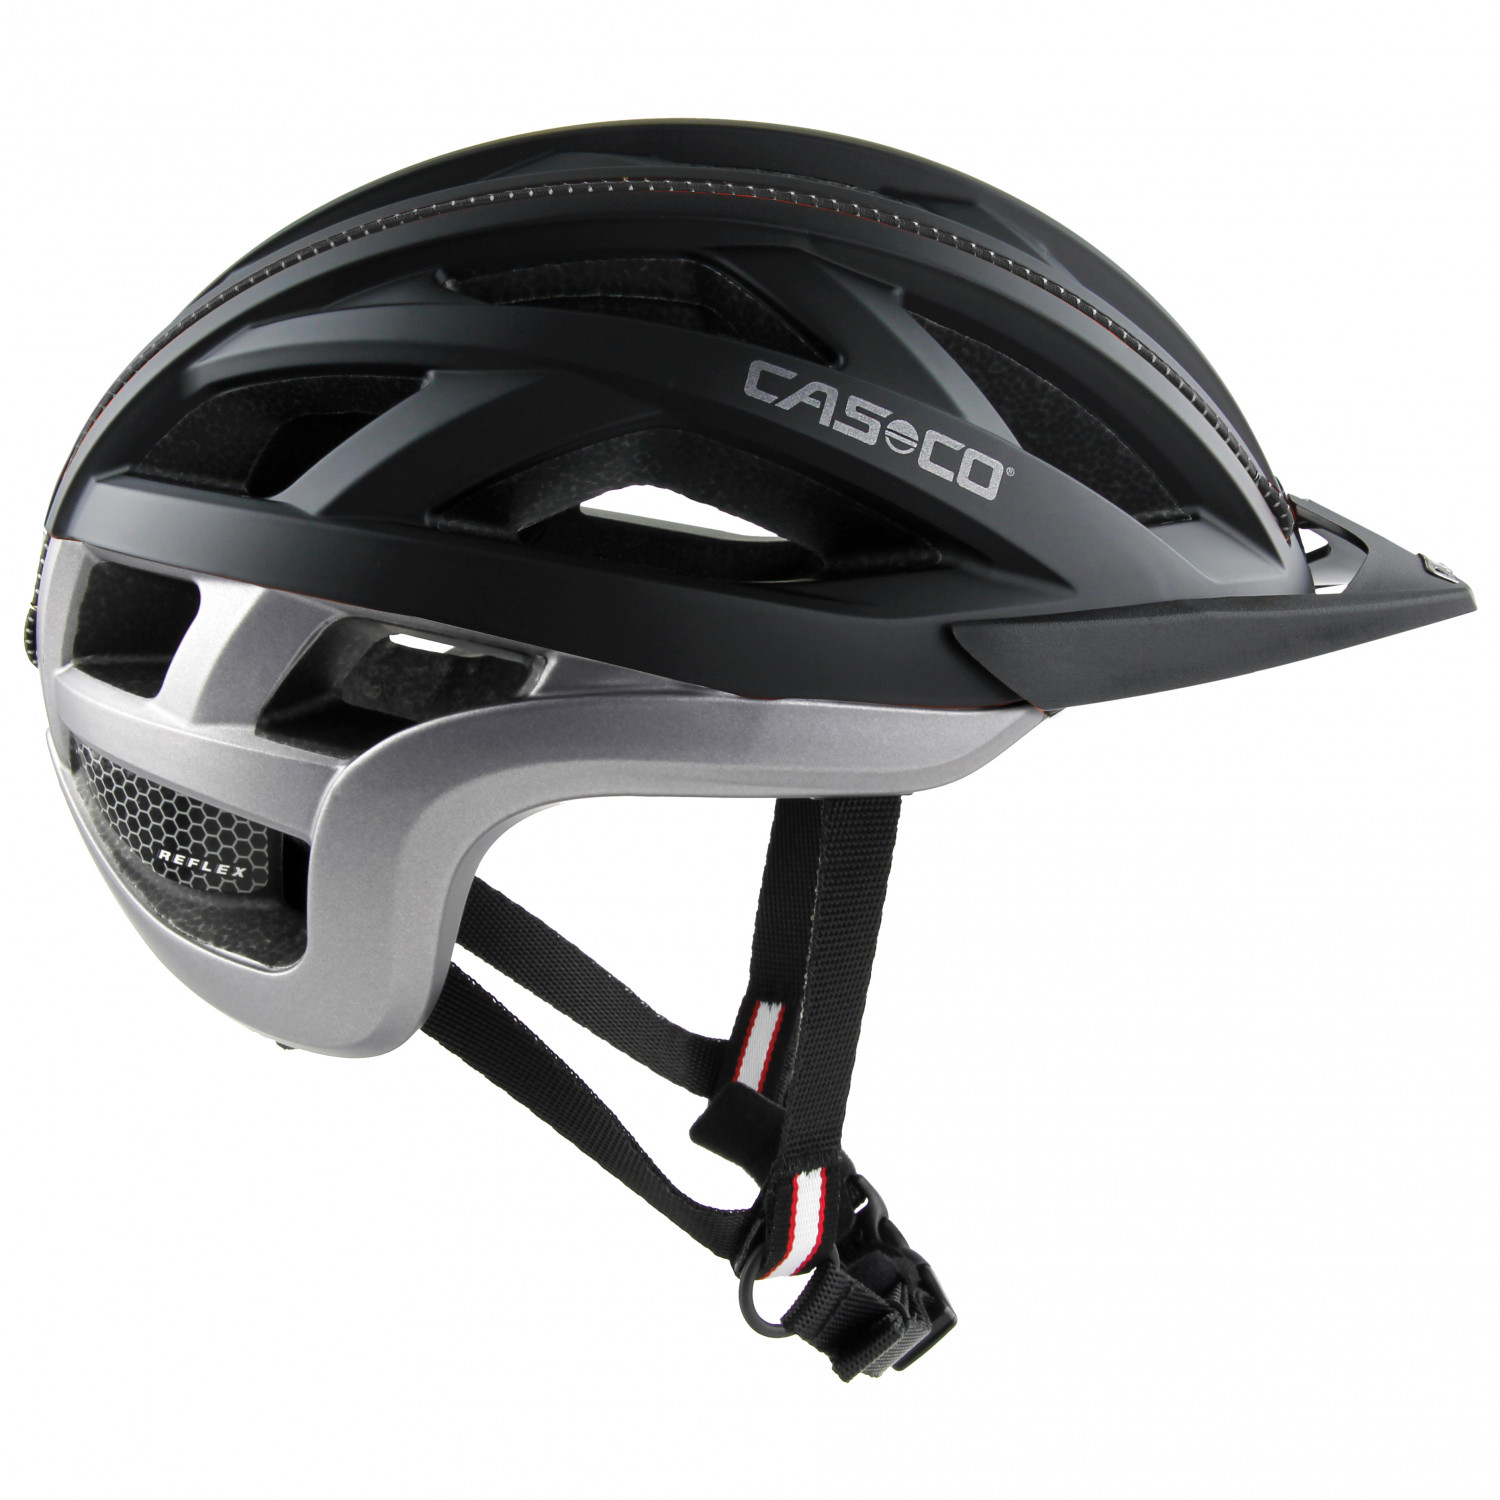 Велосипедный шлем Casco Cuda 2, цвет Black Anthracite Matt